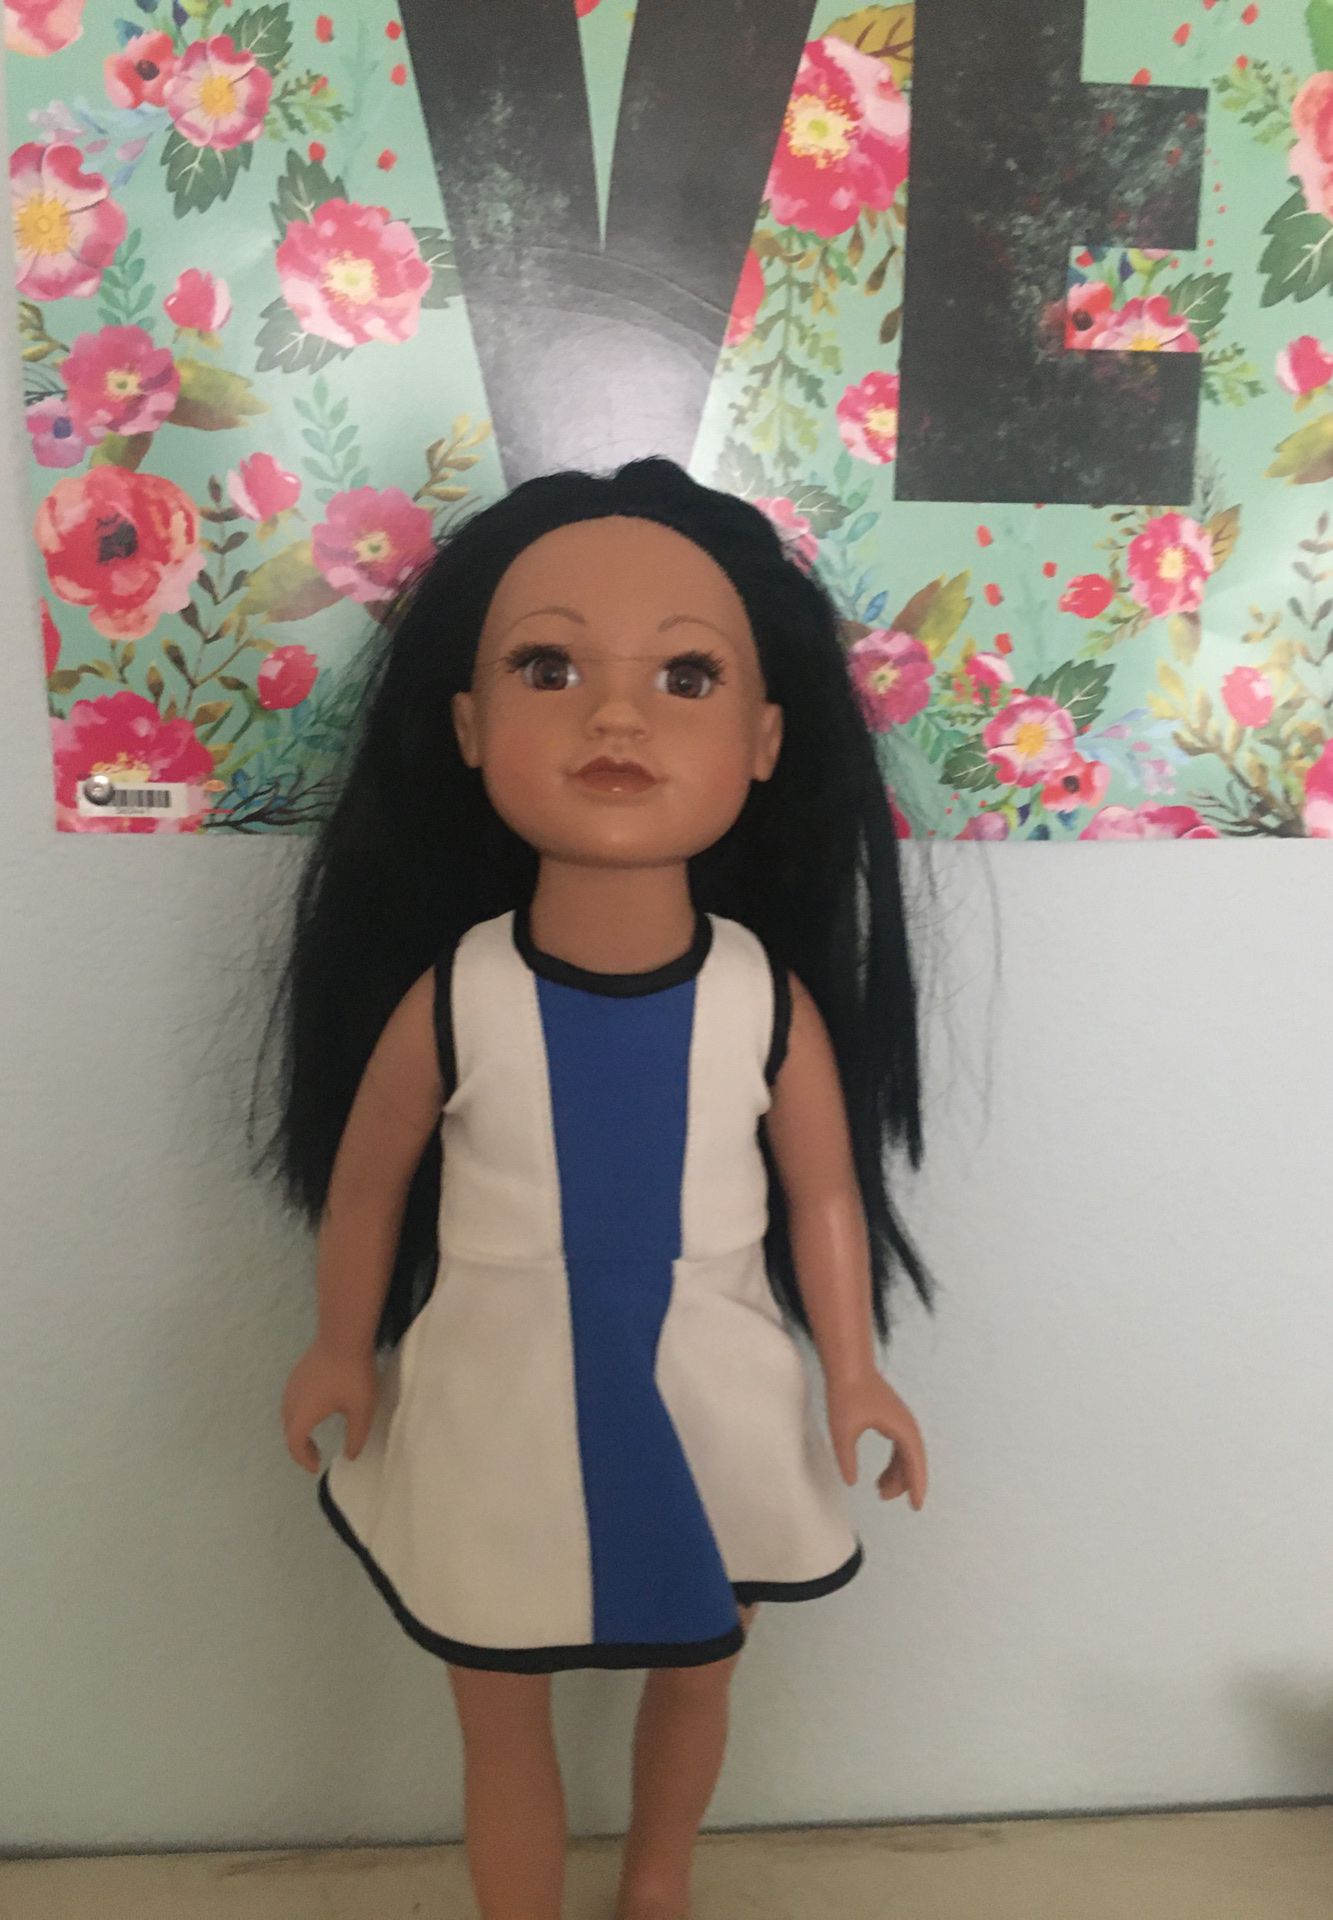 Journey girl 18” doll